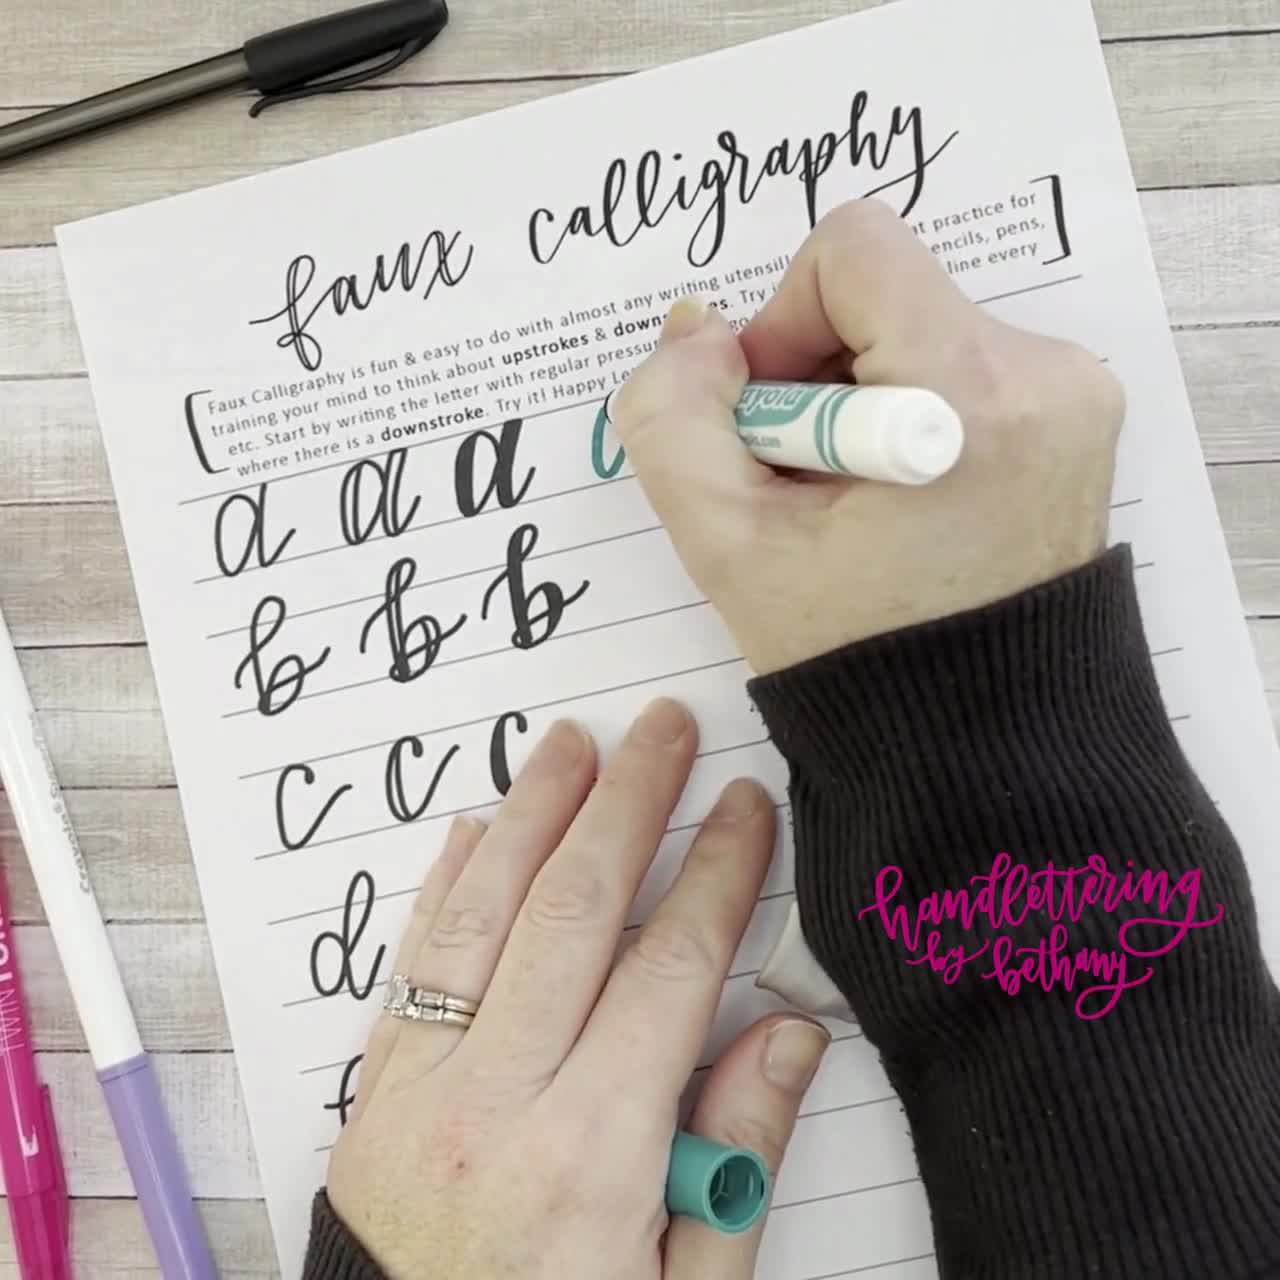 Faux Calligraphy [fausse calligraphie] tutoriel pour débutants